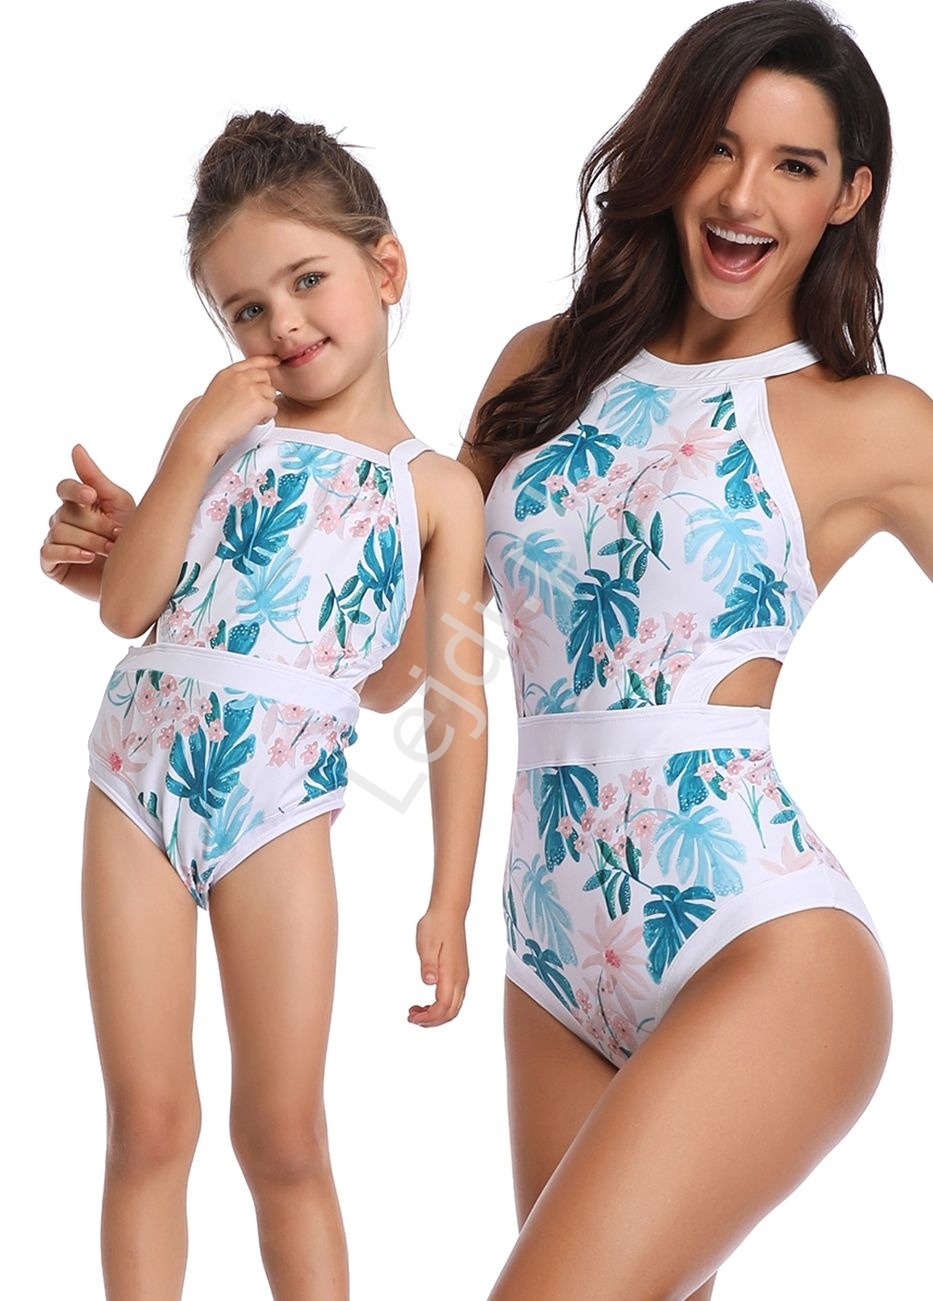 Image of Jednoczęściowy strój kąpielowy dla mamy i córki na plaże i basen